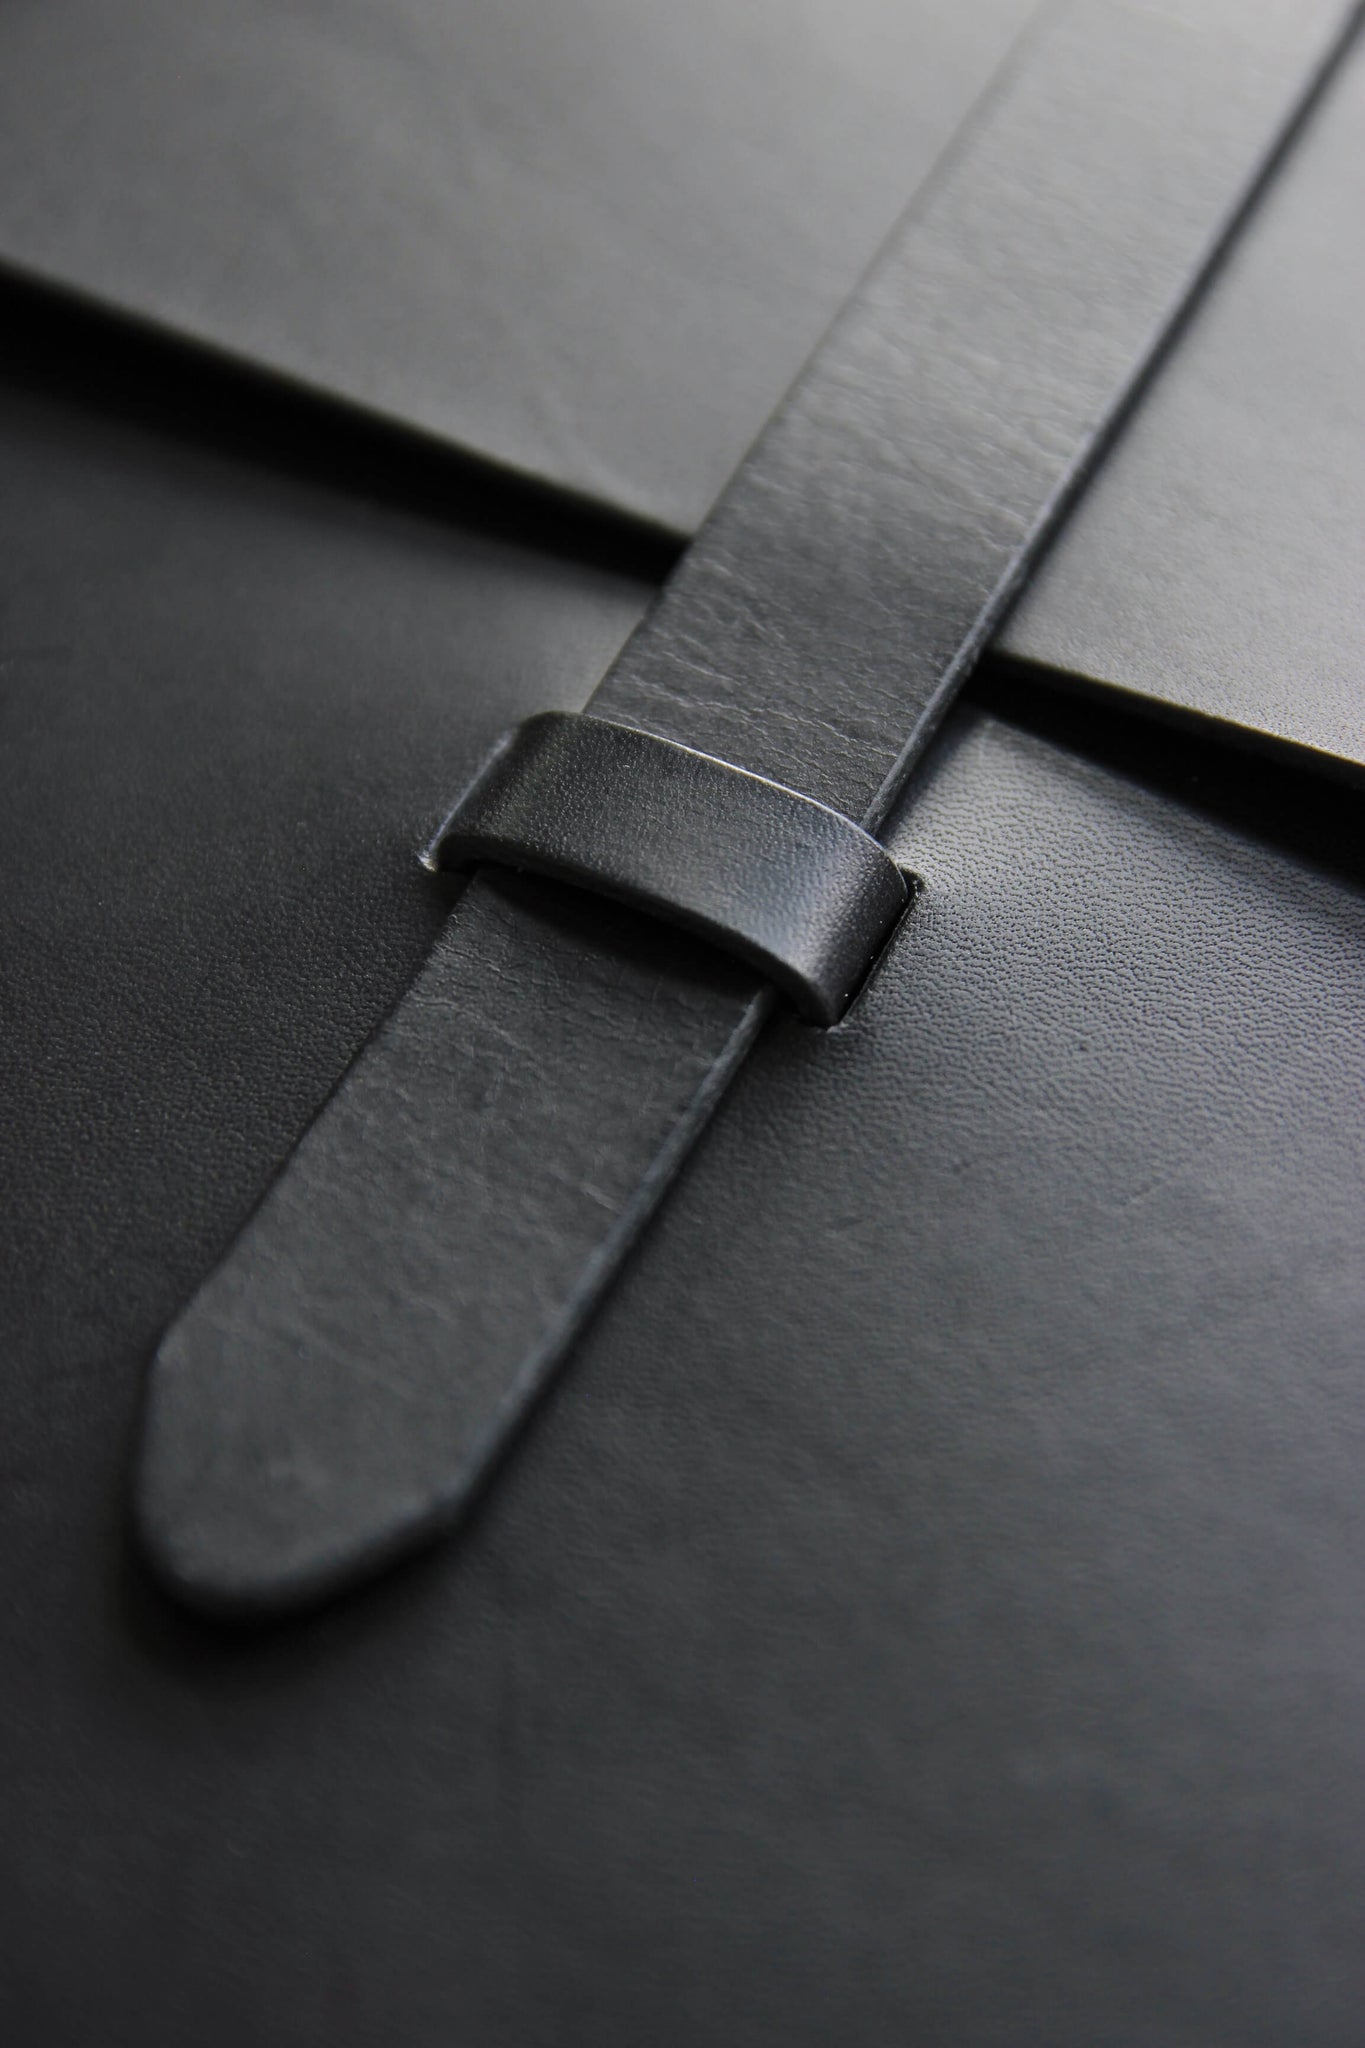 Detailaufnahme des Verschlusses einer MacBook Hülle aus Leder in Schwarz.